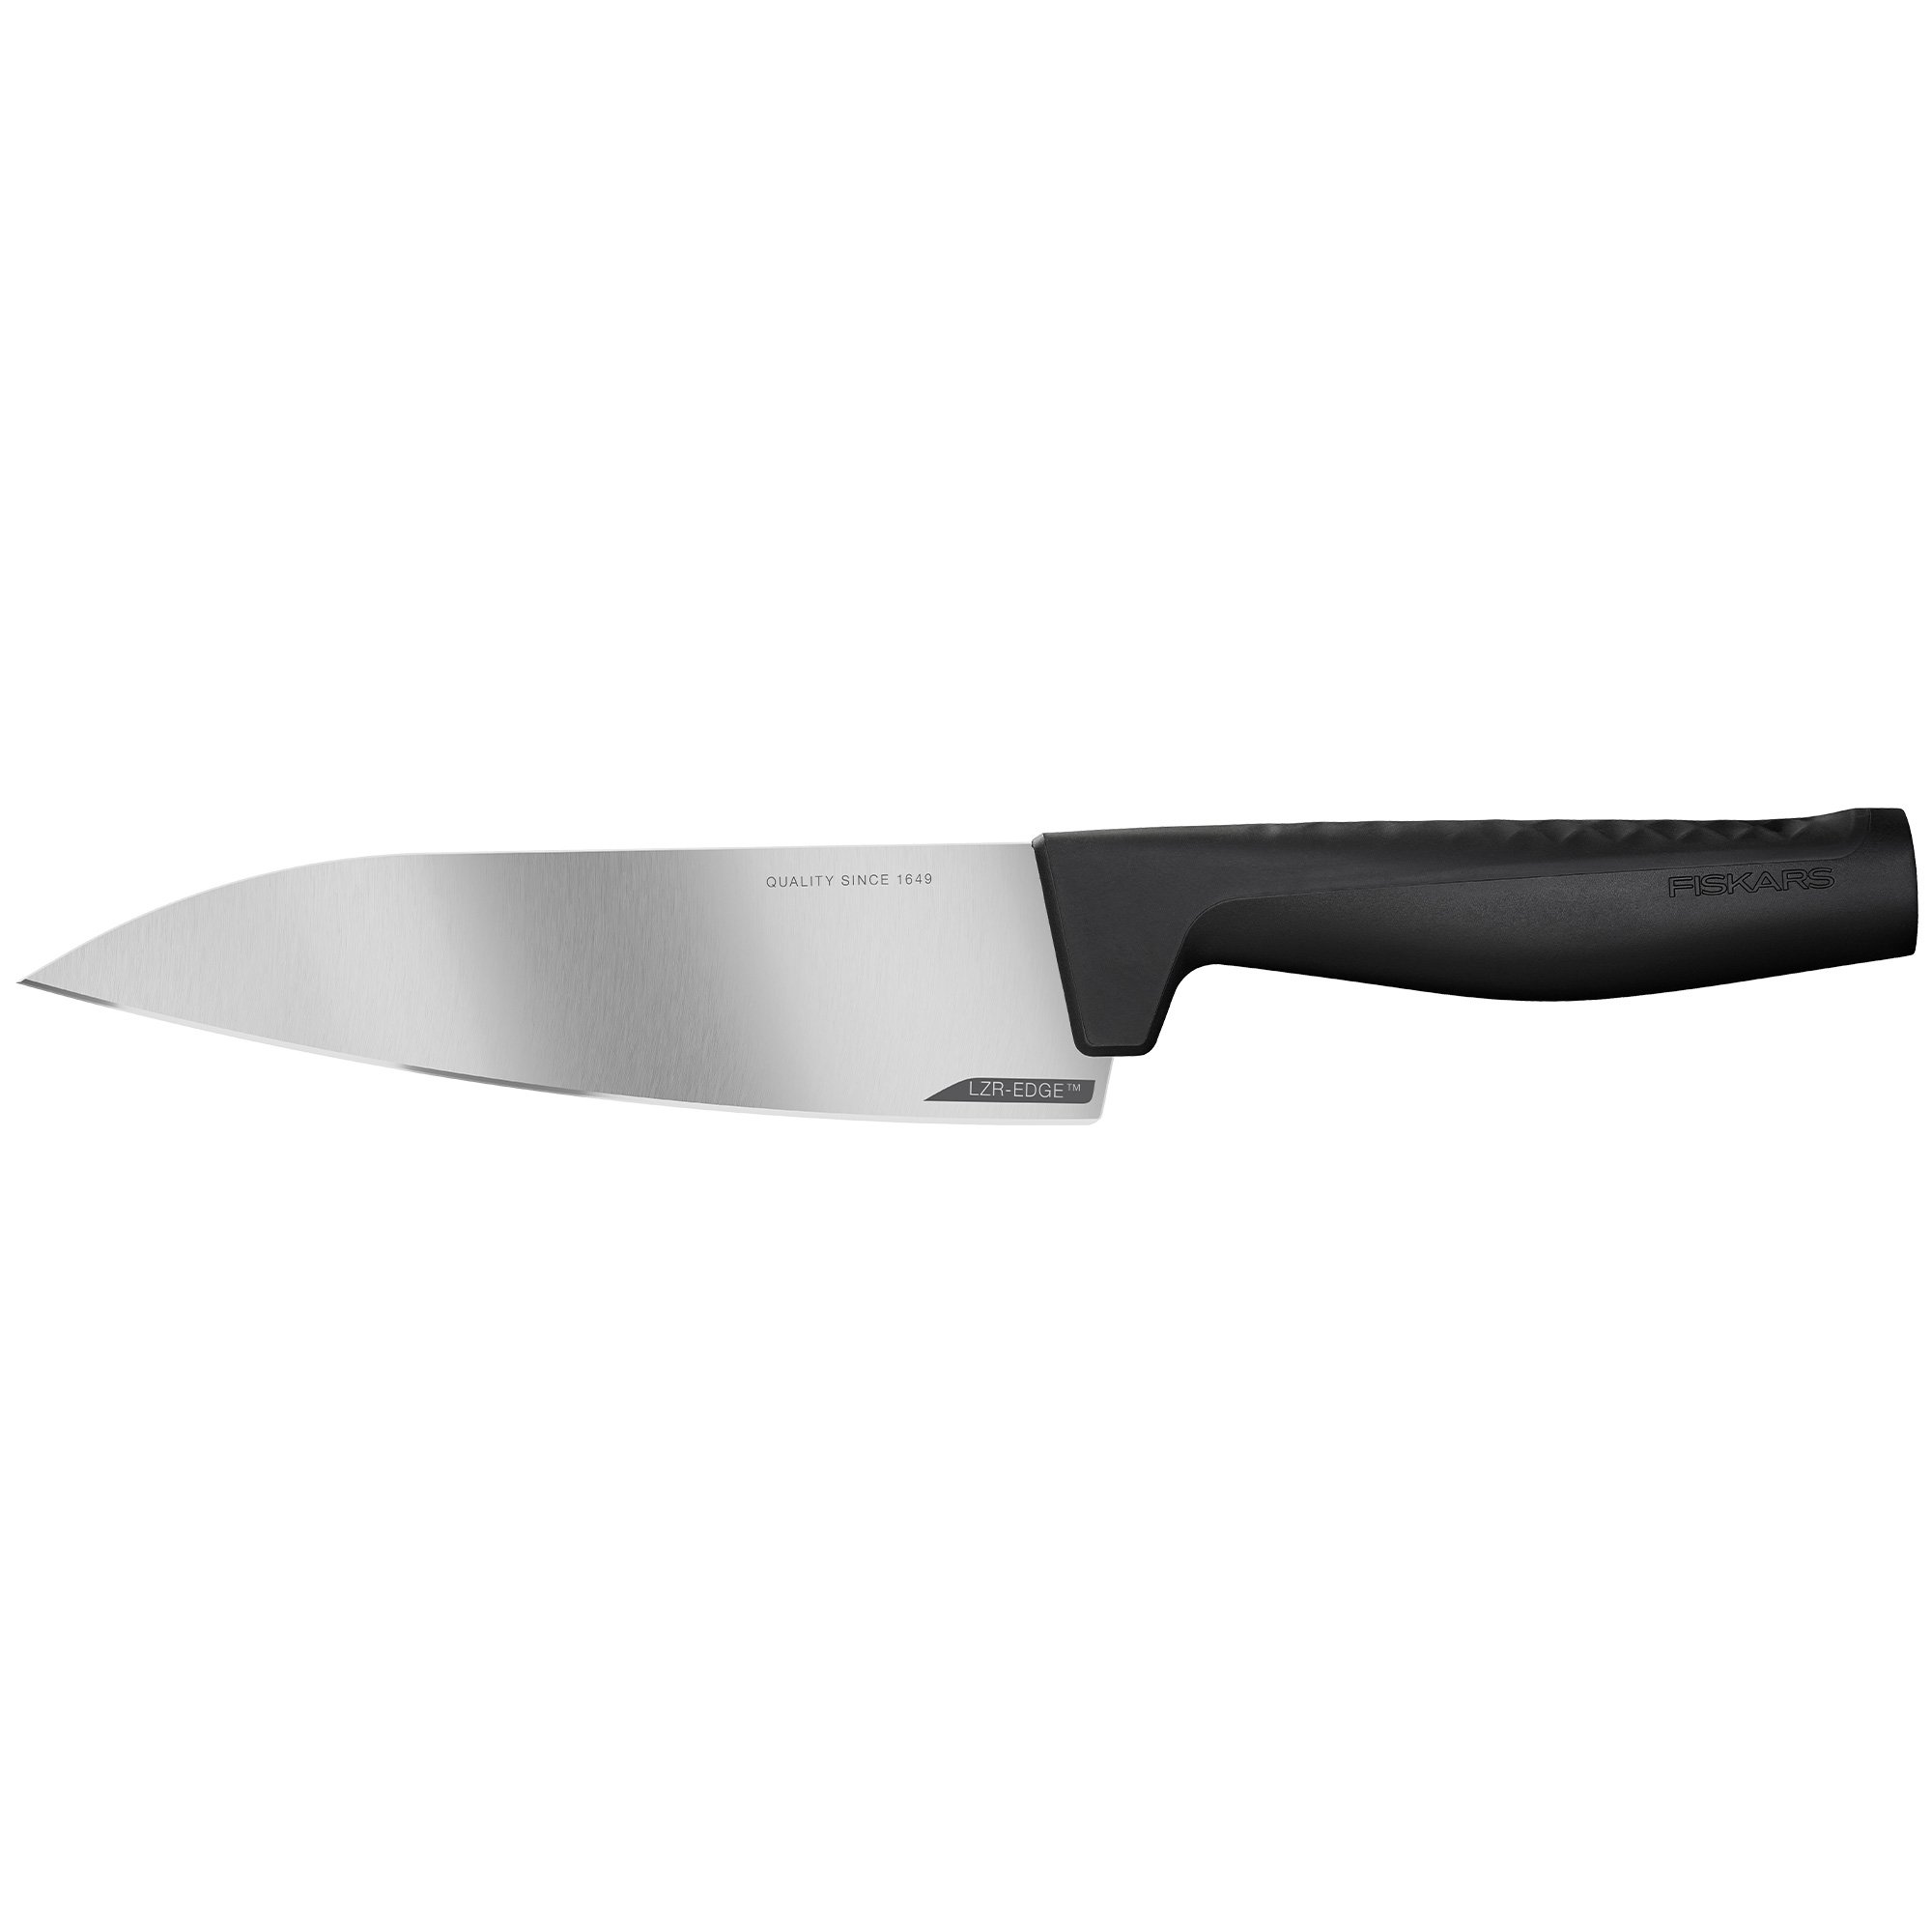 Fiskars Hard Edge kokkekniv, 17 cm